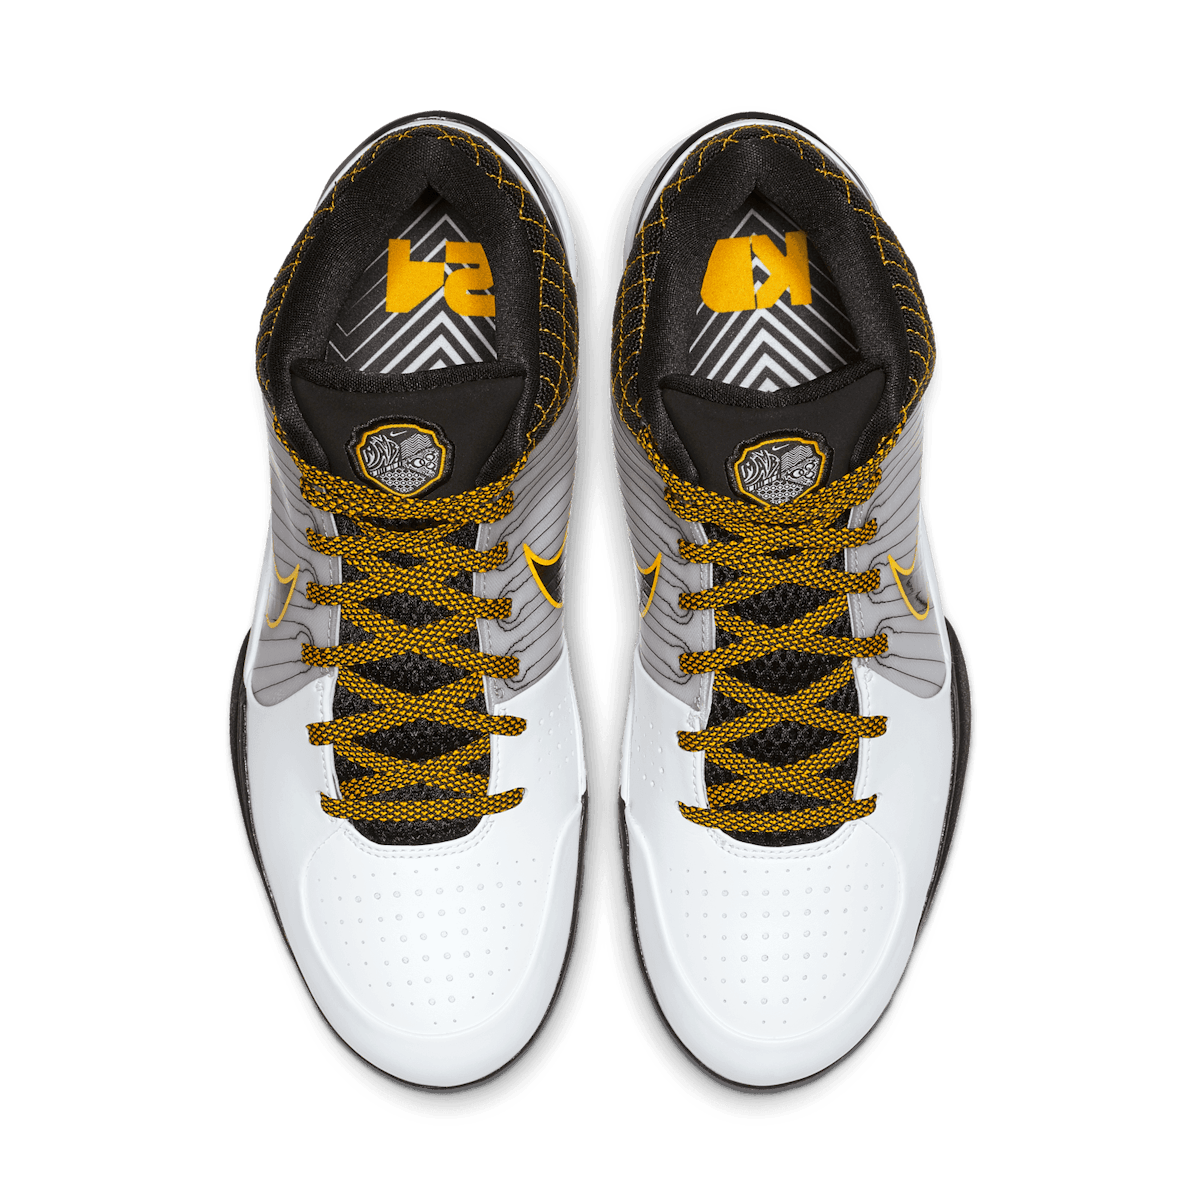 Nike Kobe 4 Protro White Black Del Sol - AV6339-101 Raffles and 